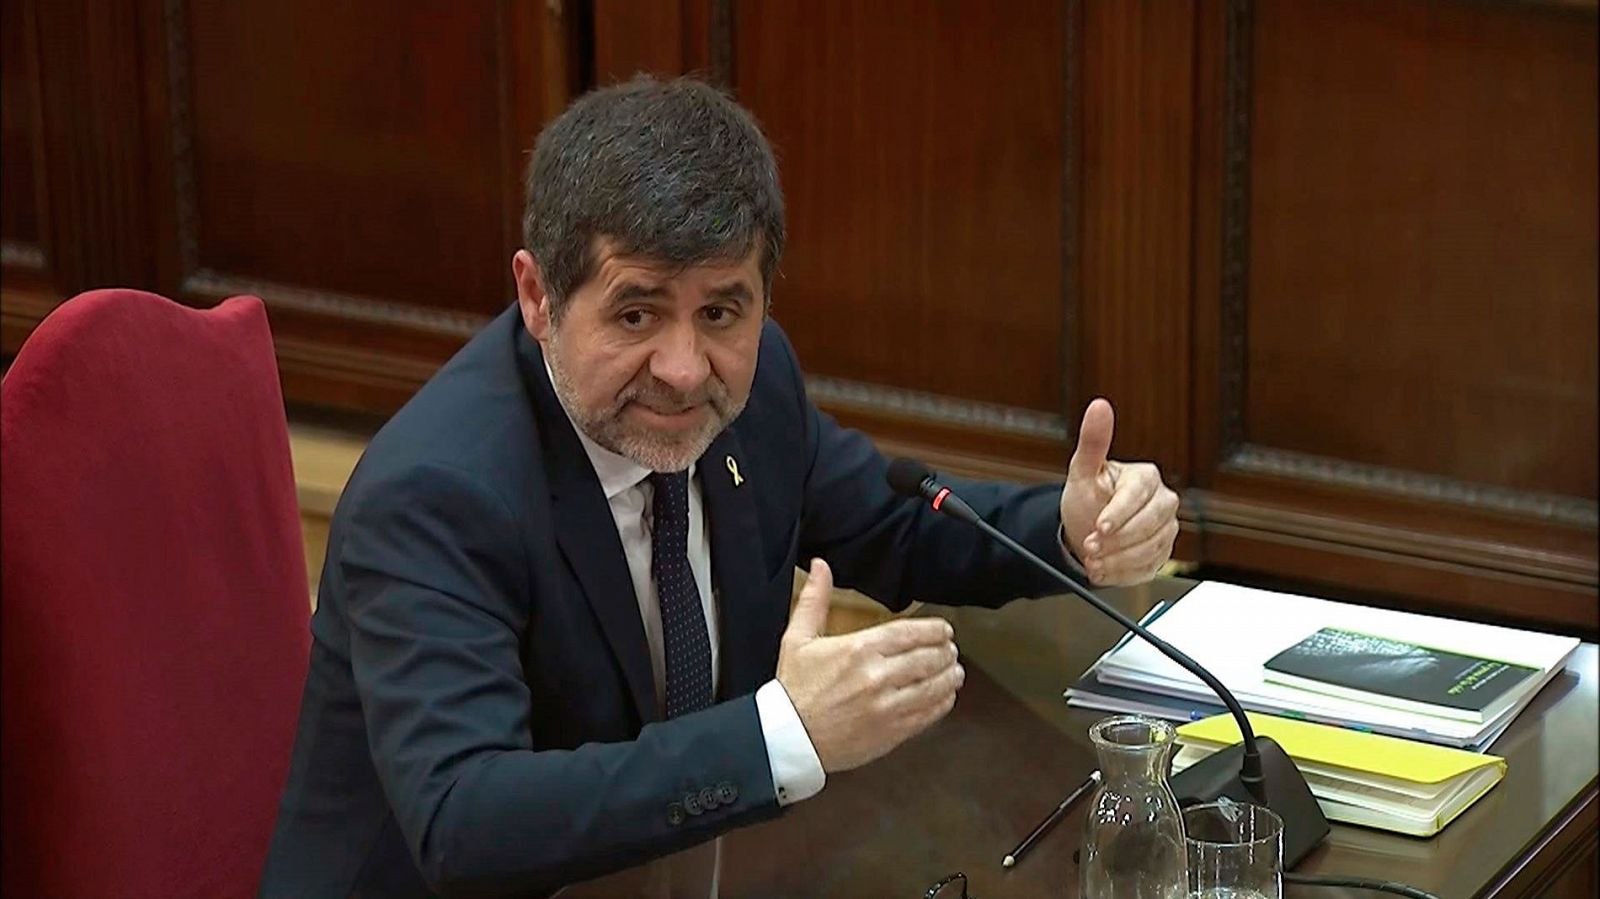 Jordi S�nchez acusa al fiscal de criminalizar una protesta "pac�fica" en su declaraci�n en el Supremo